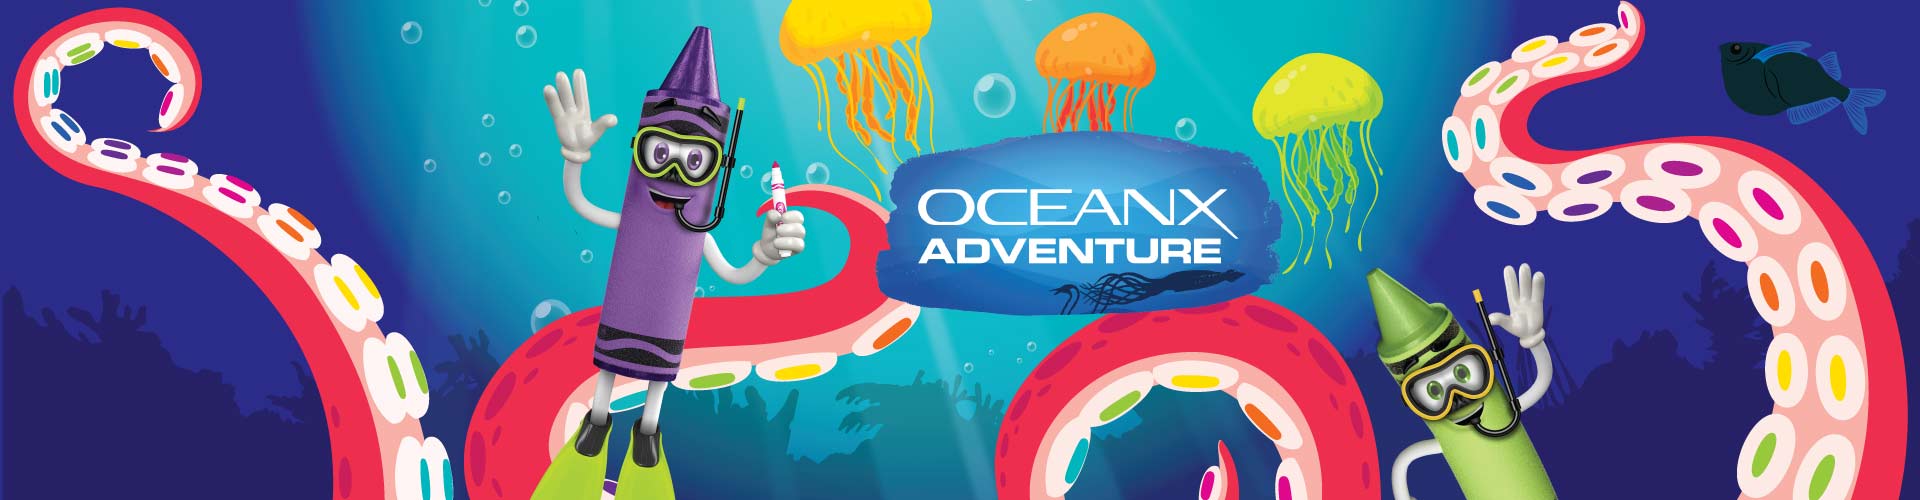 Oceanx at Crayola Facebook Image